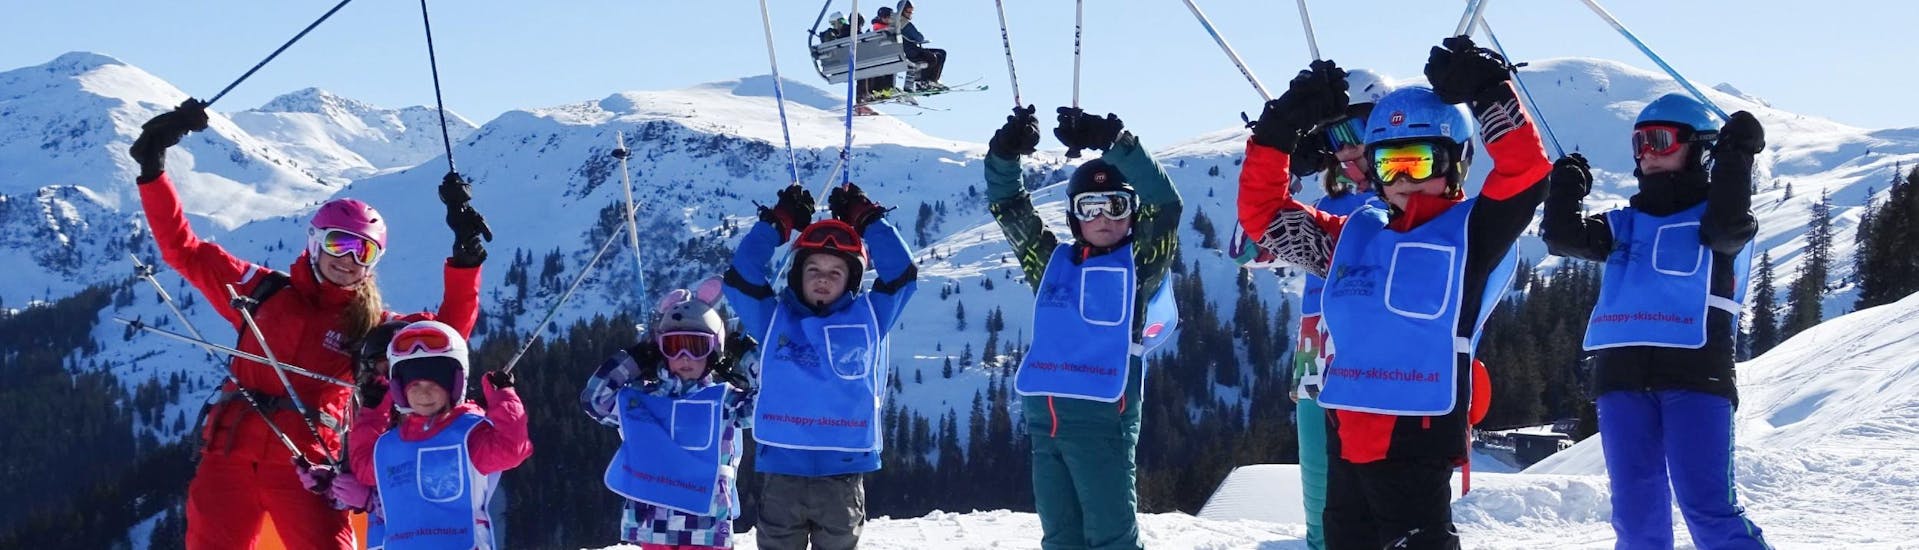 Clases de esquí para niños a partir de 5 años con experiencia.